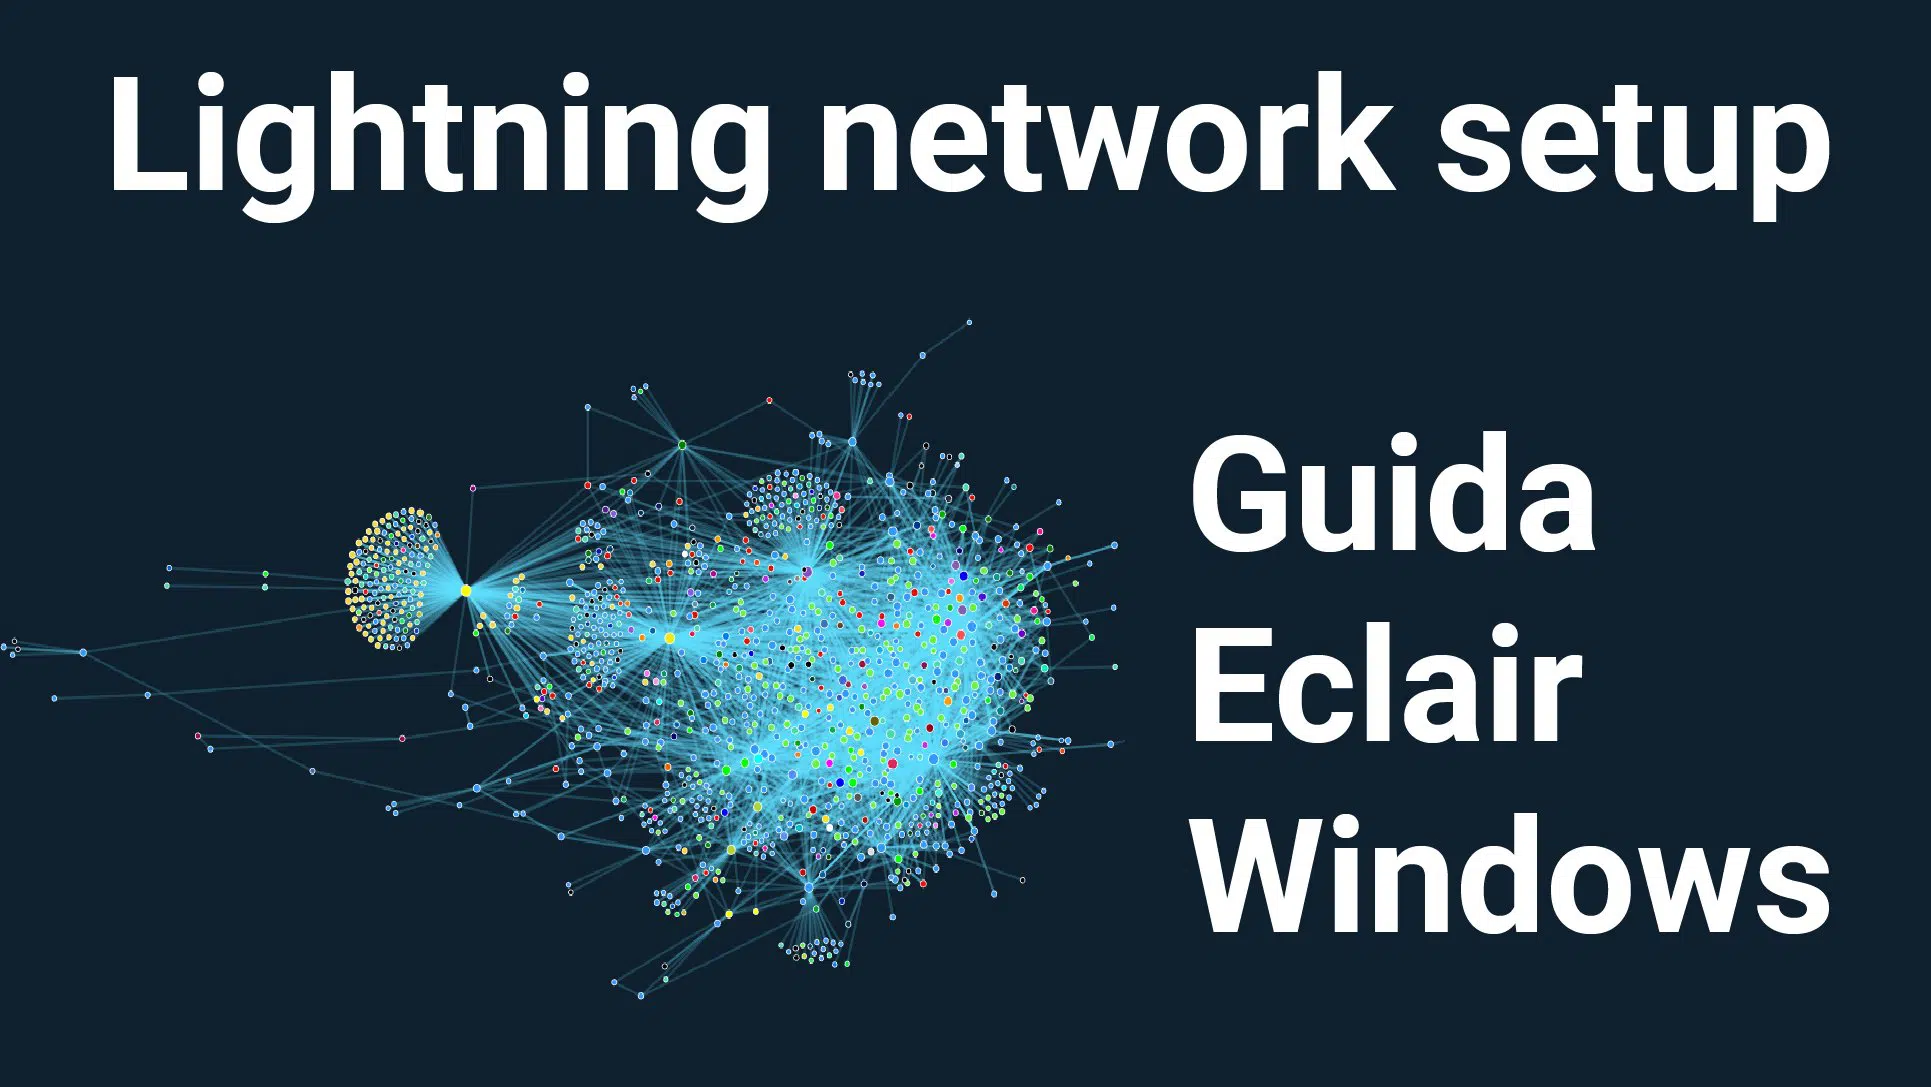 come creare un nodo lightning network in mainnet con eclair su windows guida